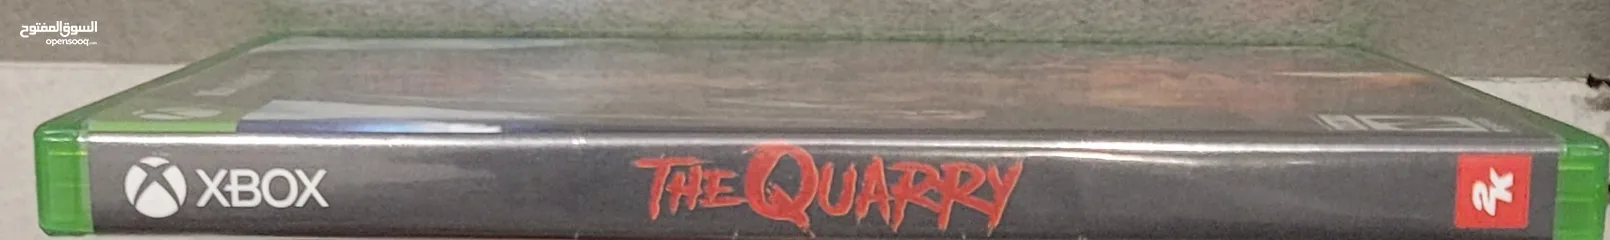  4 لعبة THE QUARRY اكس بوكس X